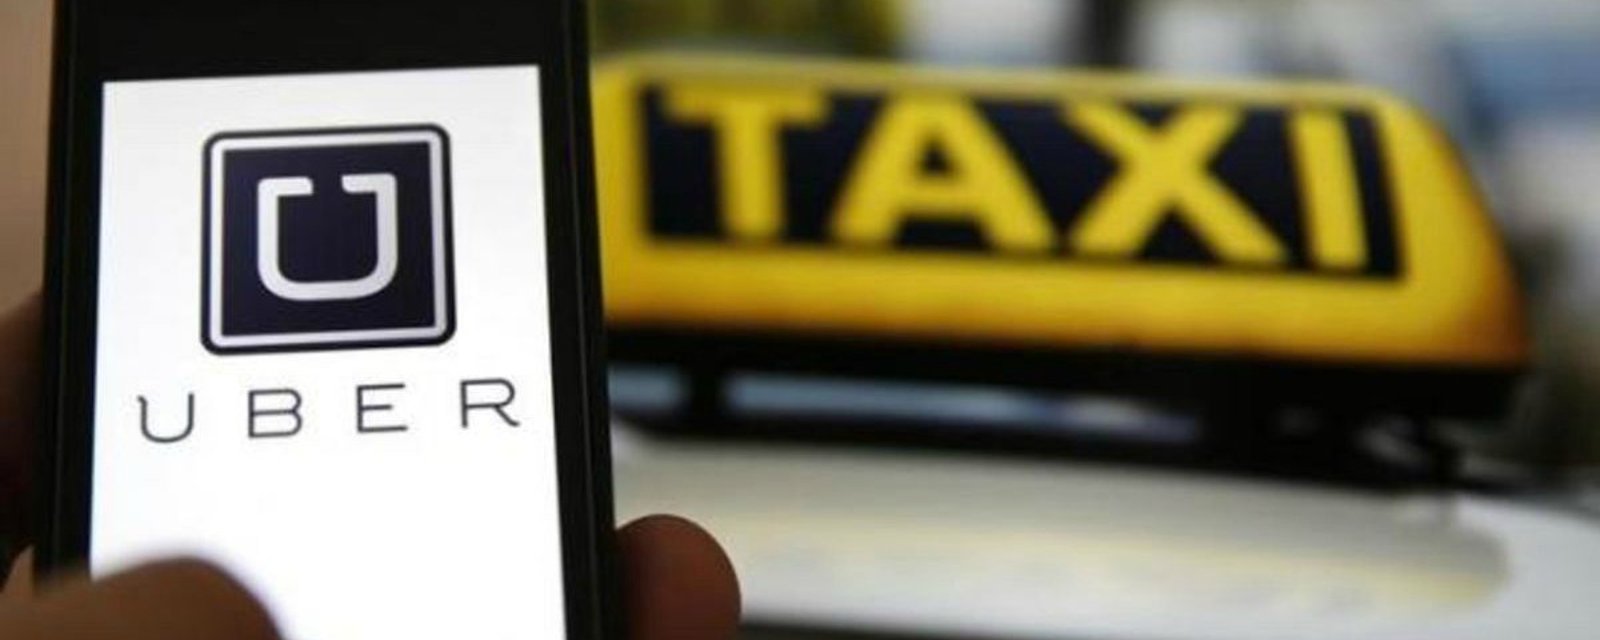 La date d’entrée en vigueur de la réglementation sur Uber maintenant connue…